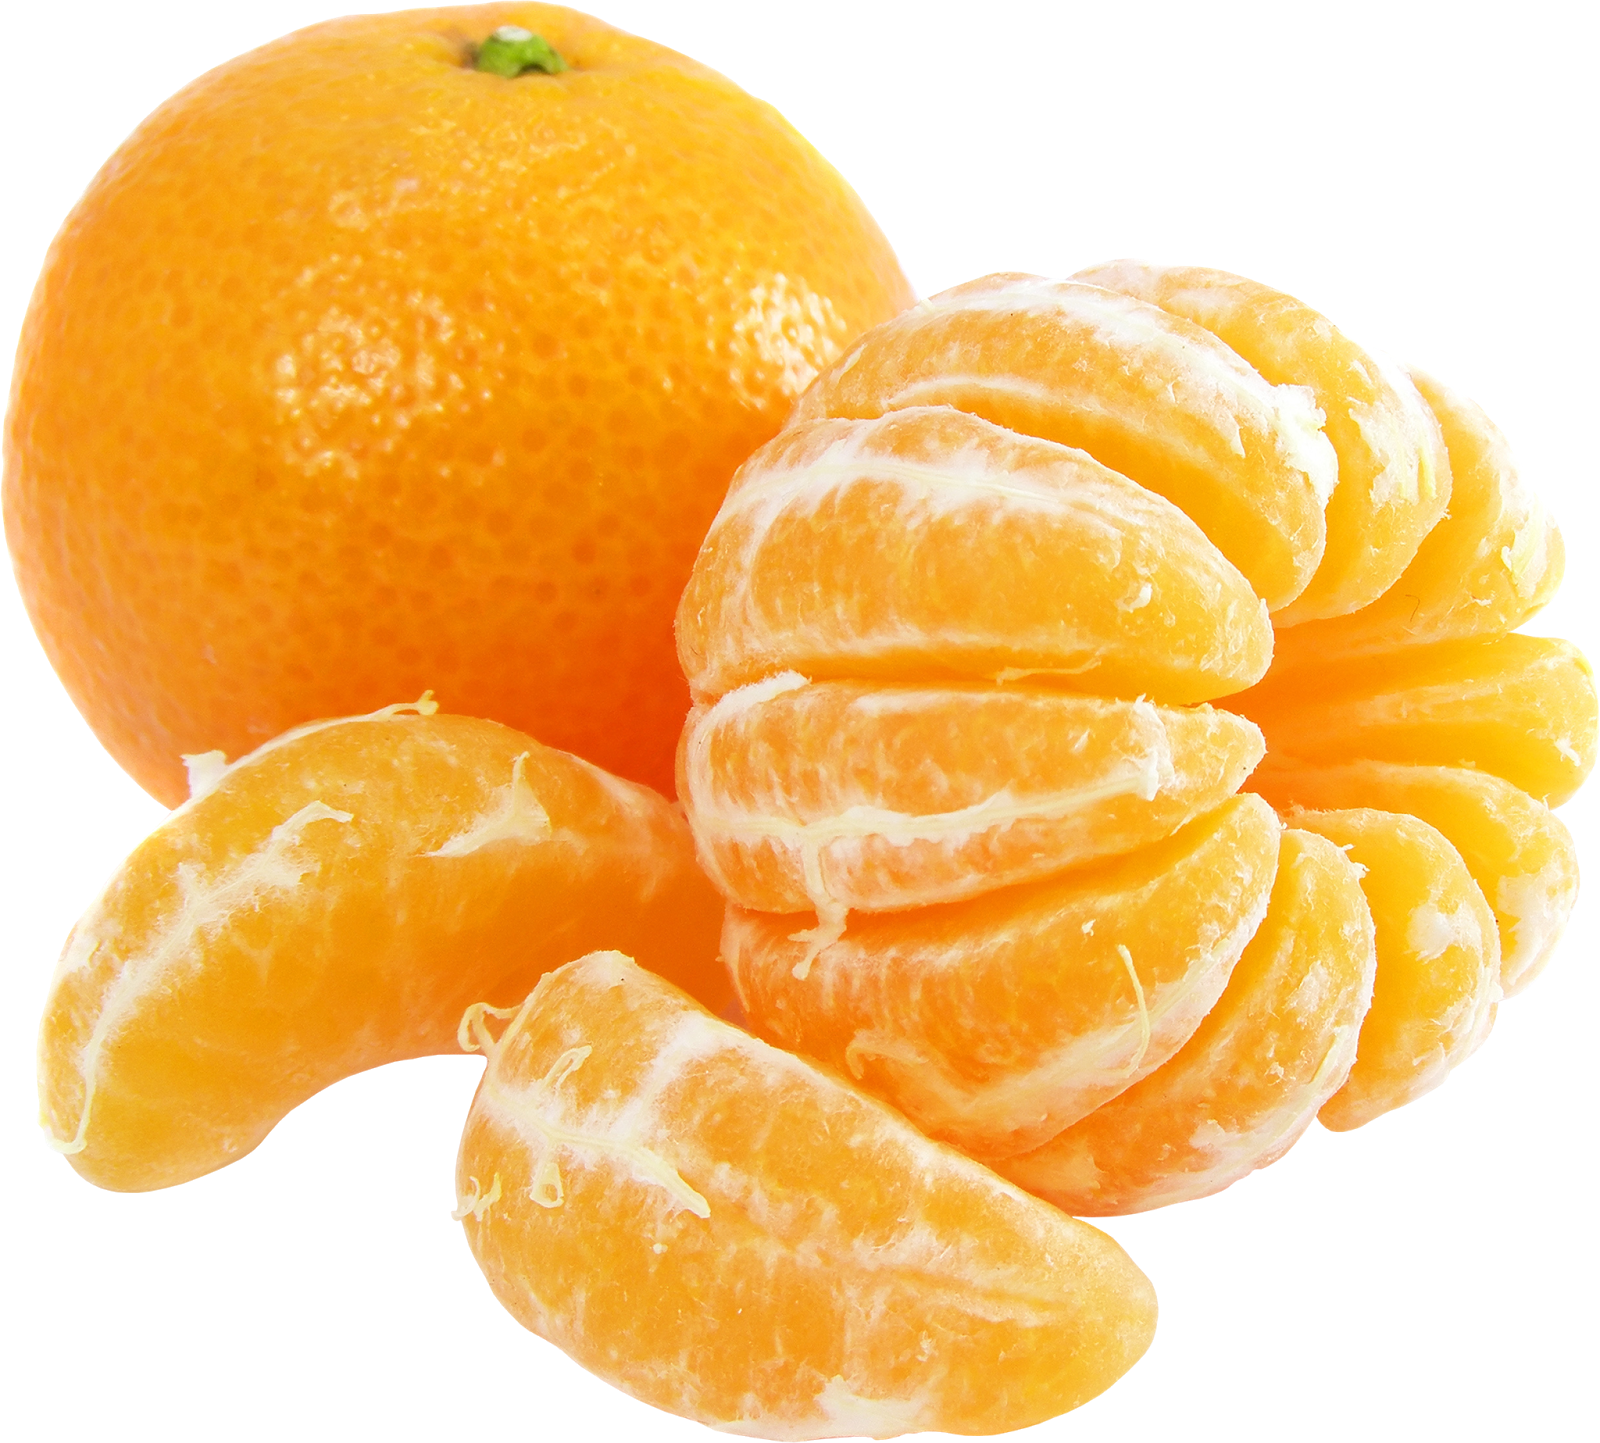 Orange Benefits: संतरा शरीर को तरोताजा रखता है, जानिए इसके फायदों के बारे में